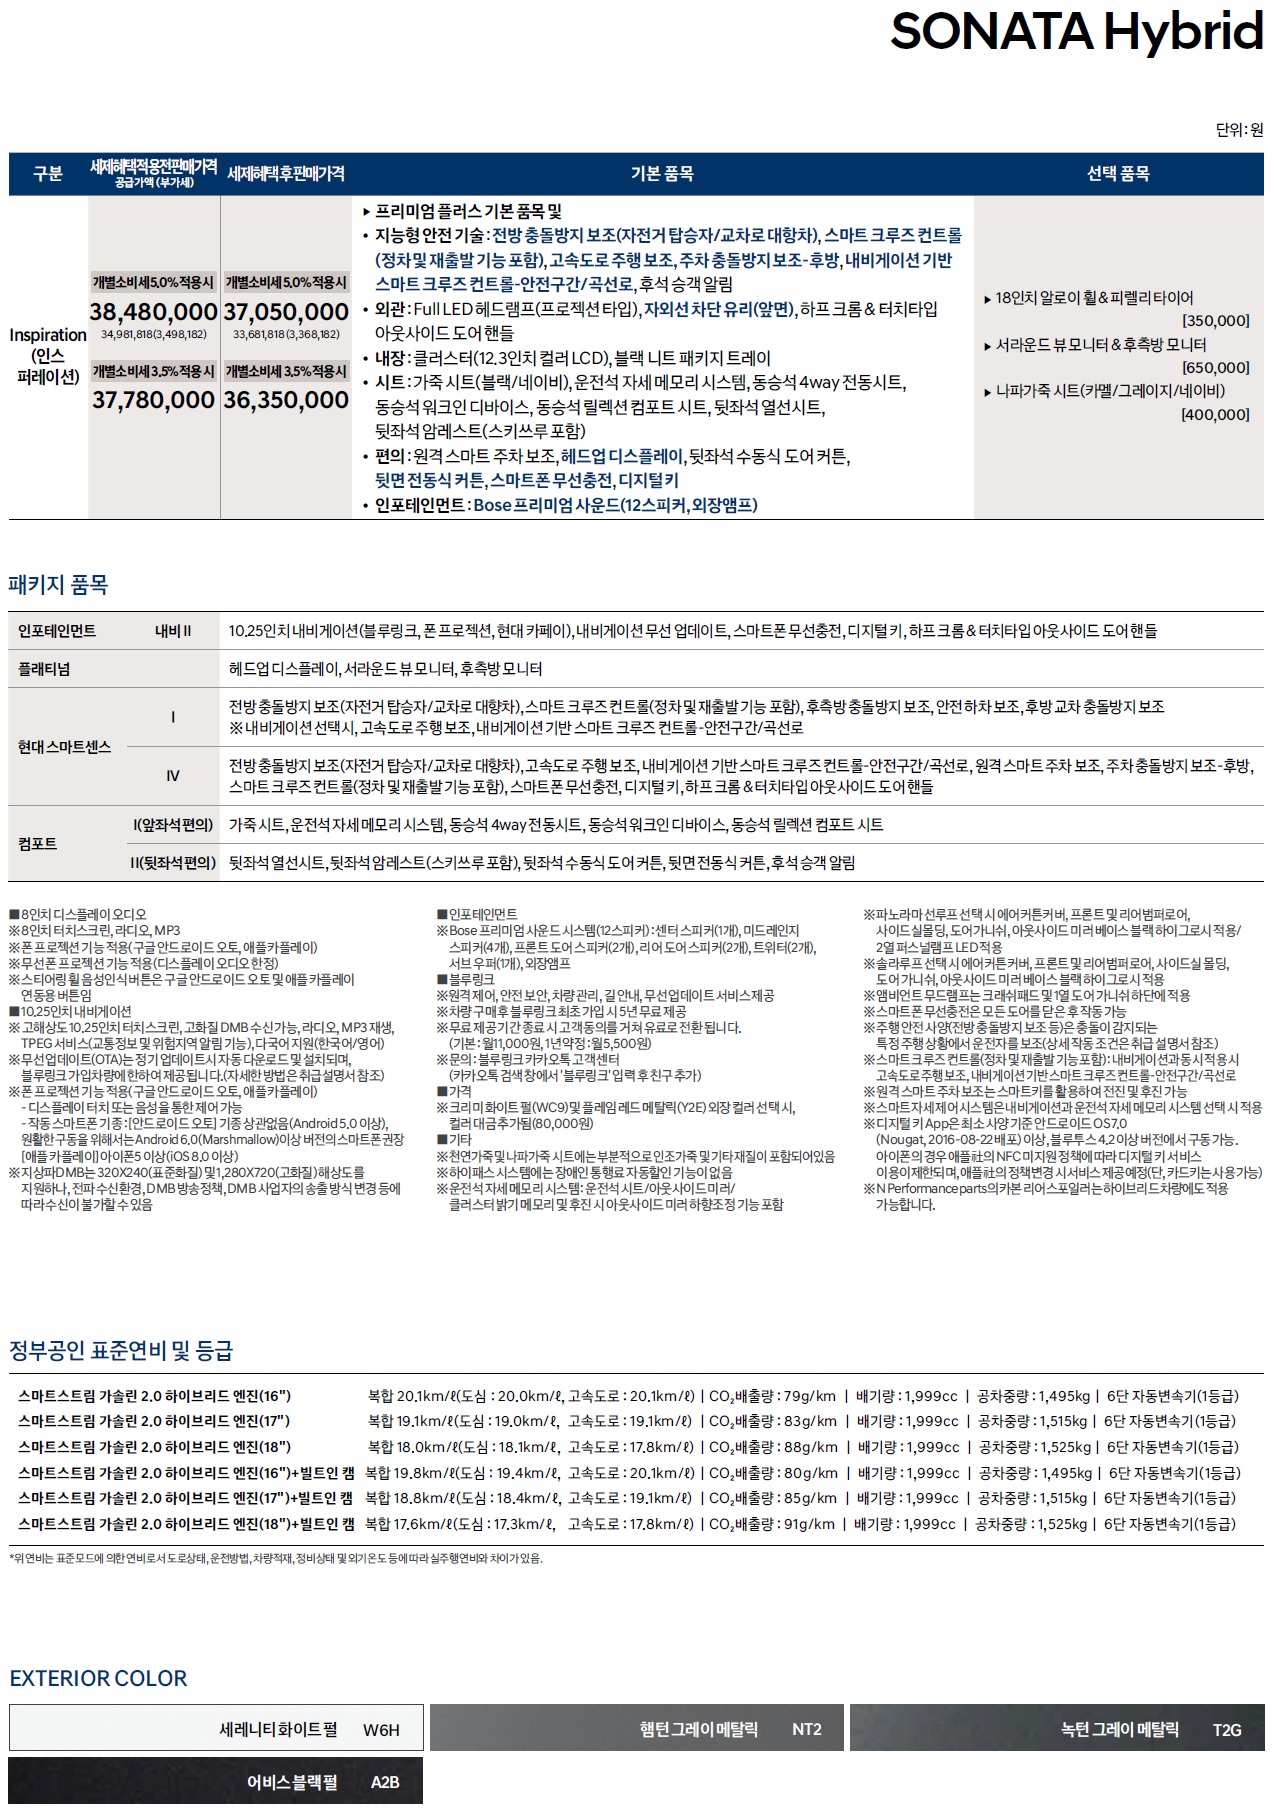 쏘나타 하이브리드 가격표 - 2022년 07월 (2023년형) -2.jpg